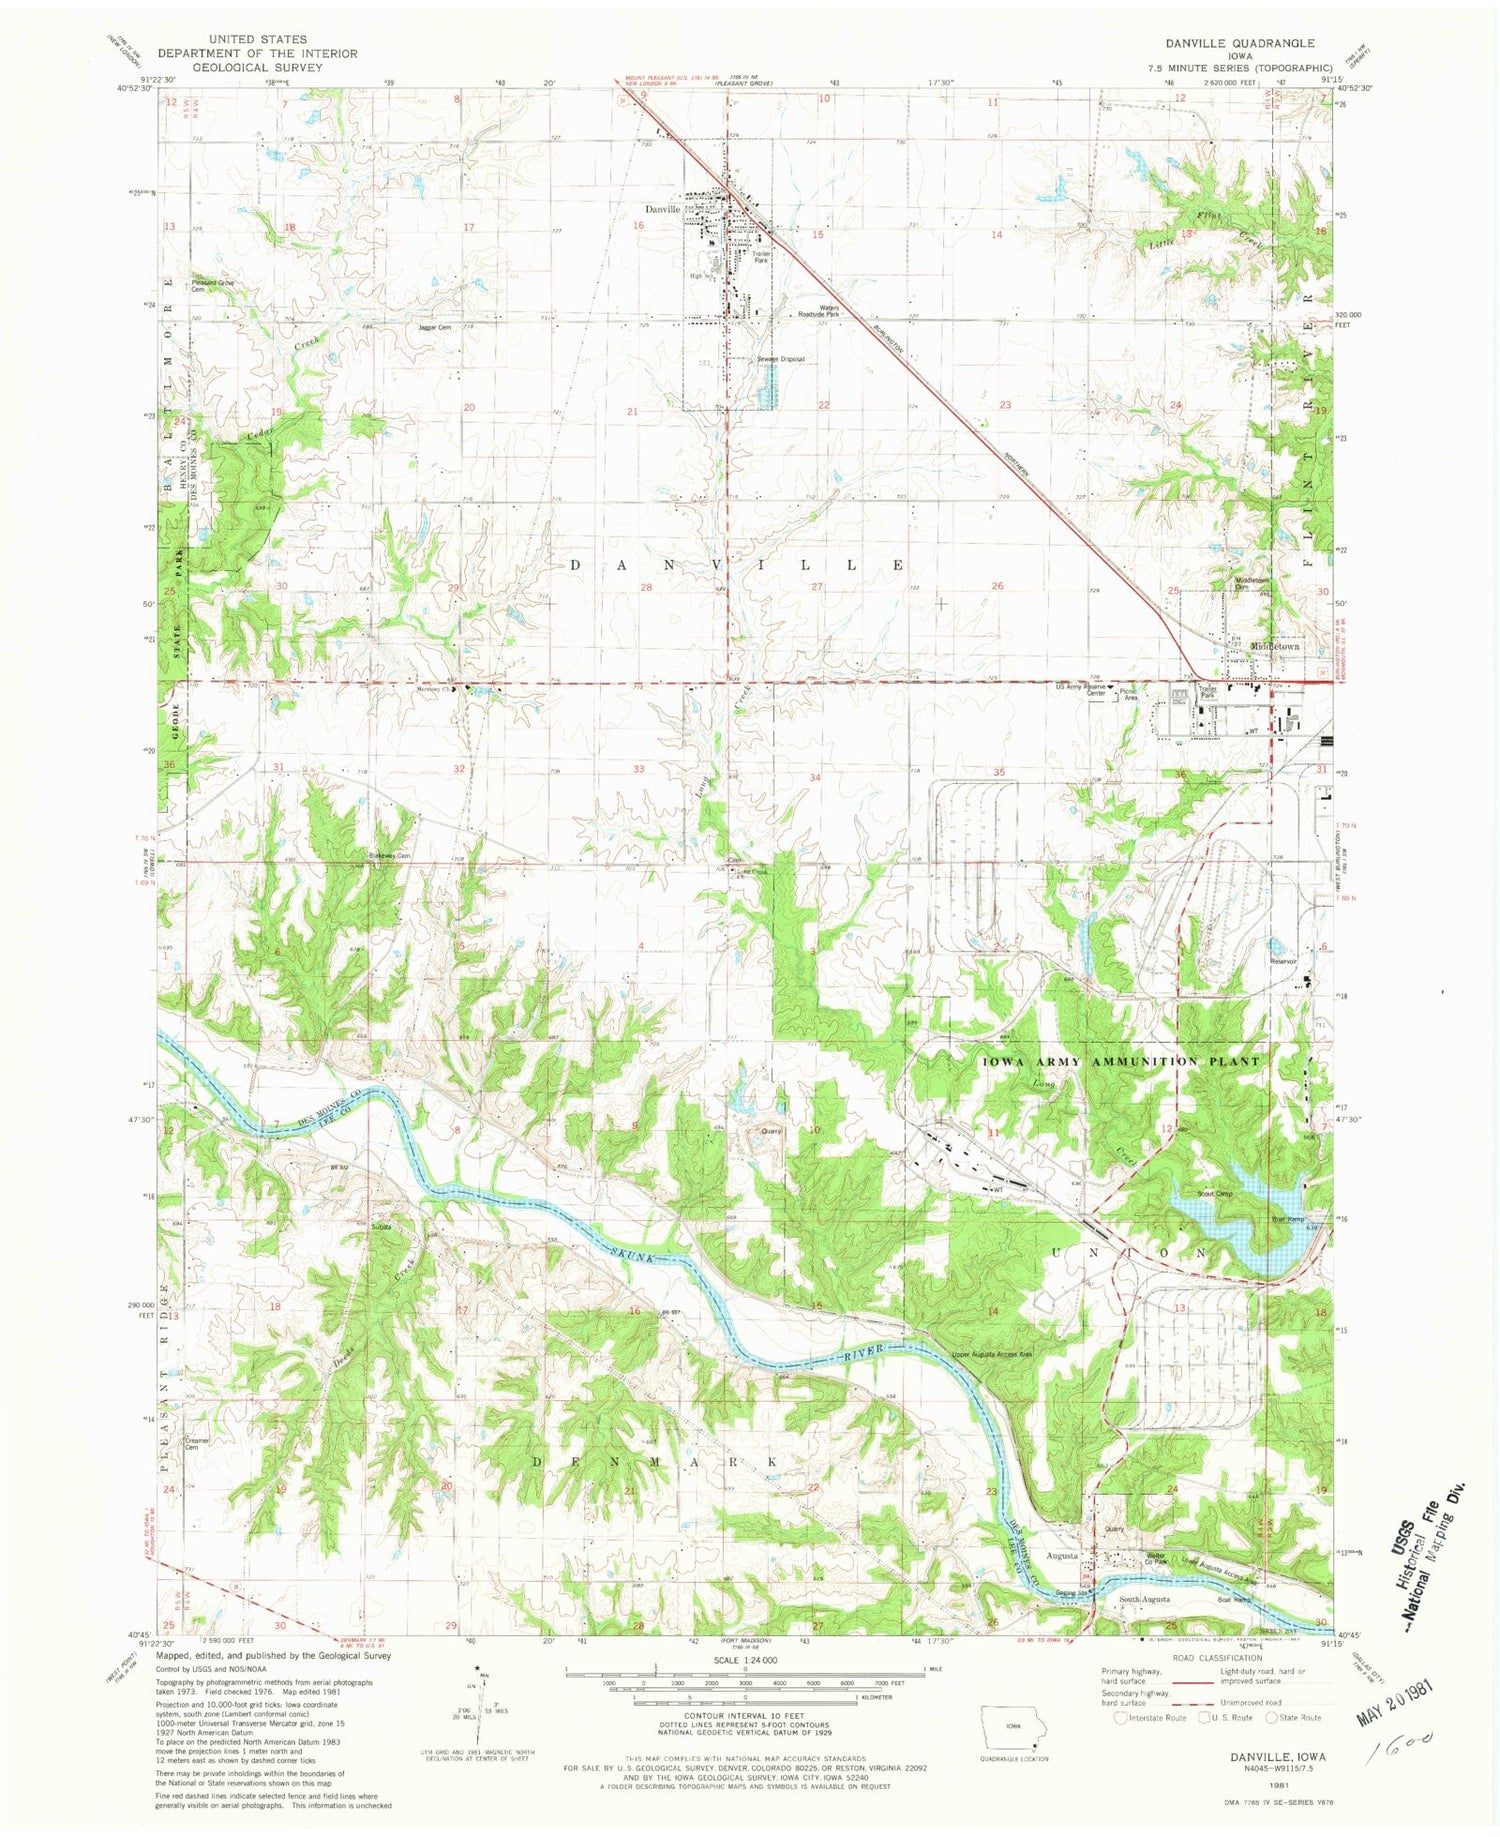 Classic USGS Danville Iowa 7.5'x7.5' Topo Map Image